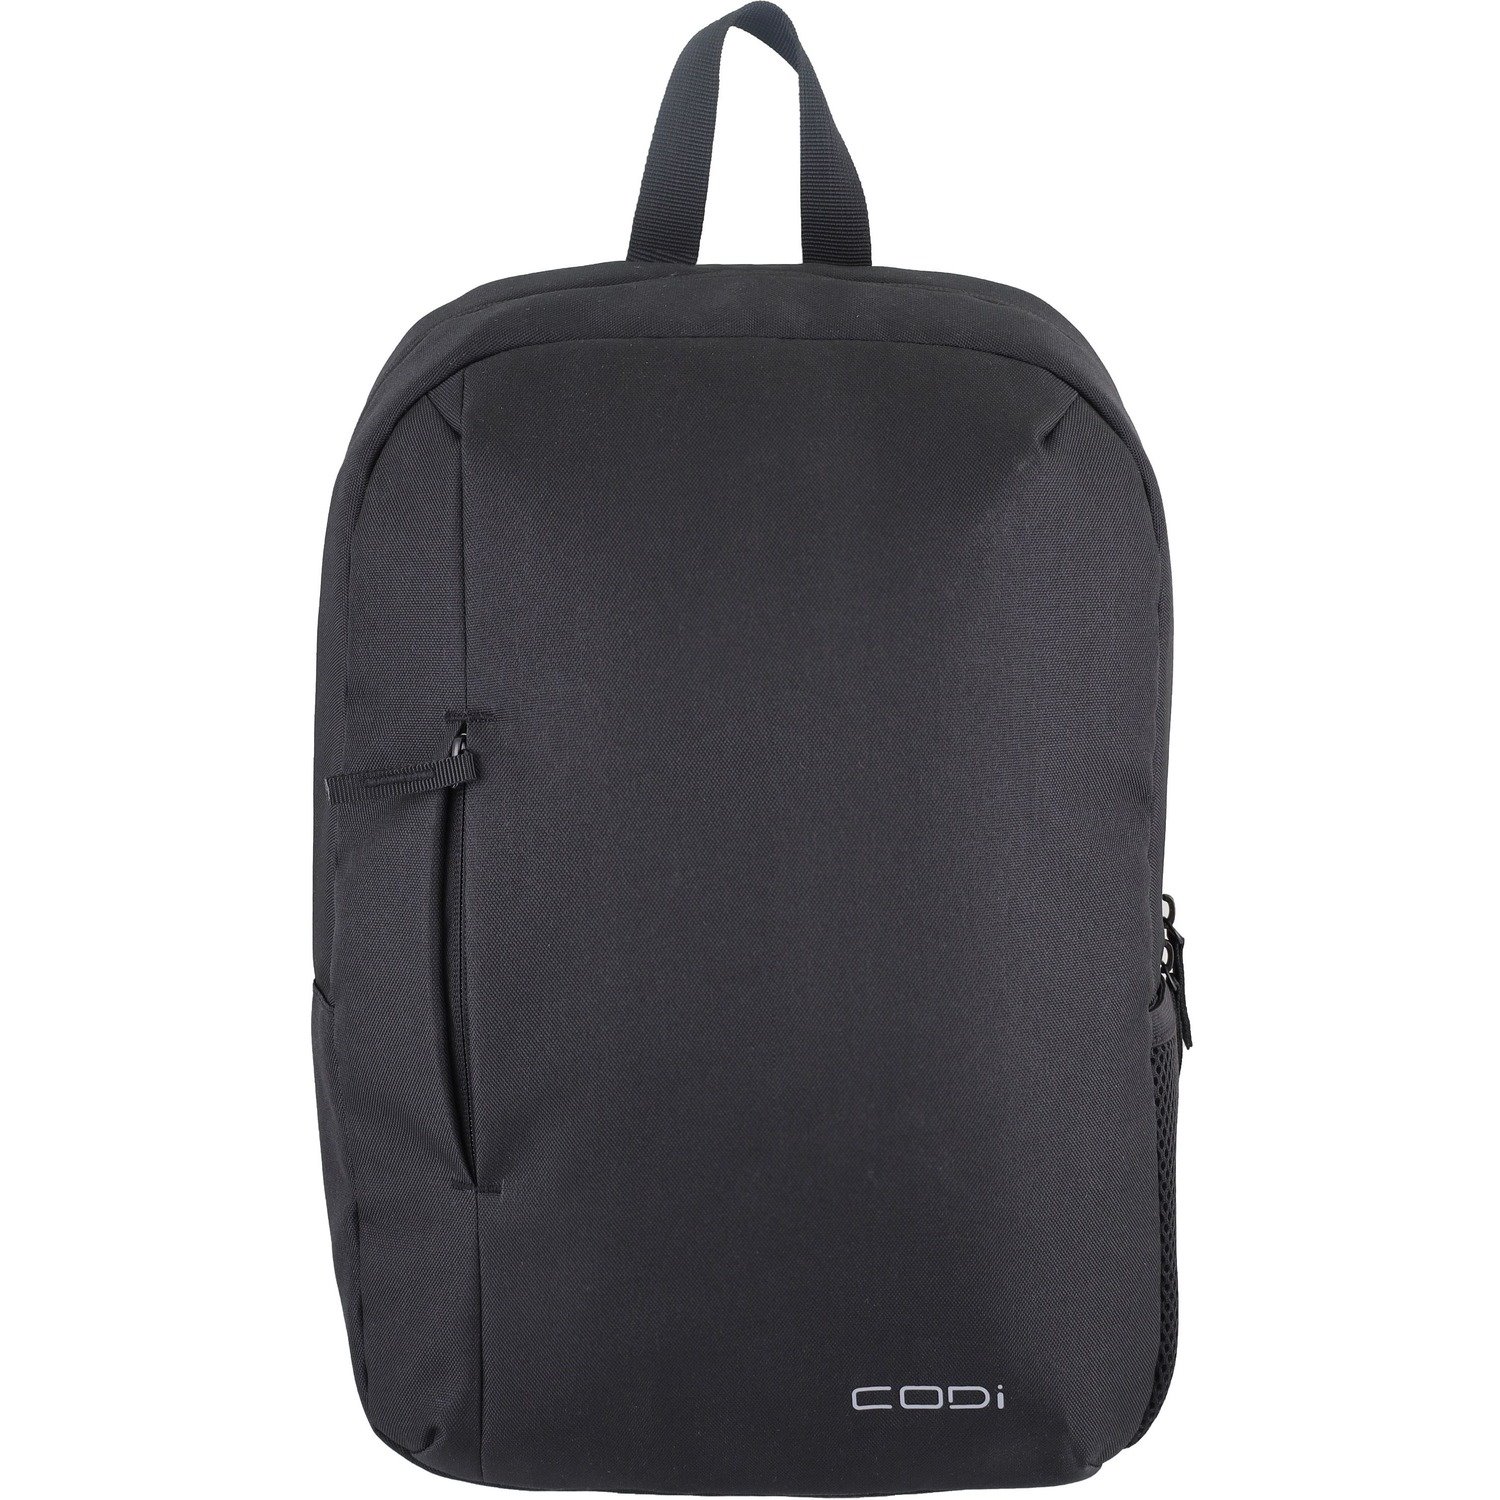 Codi Black 15.6" Valore Backpack Model VLR713-4